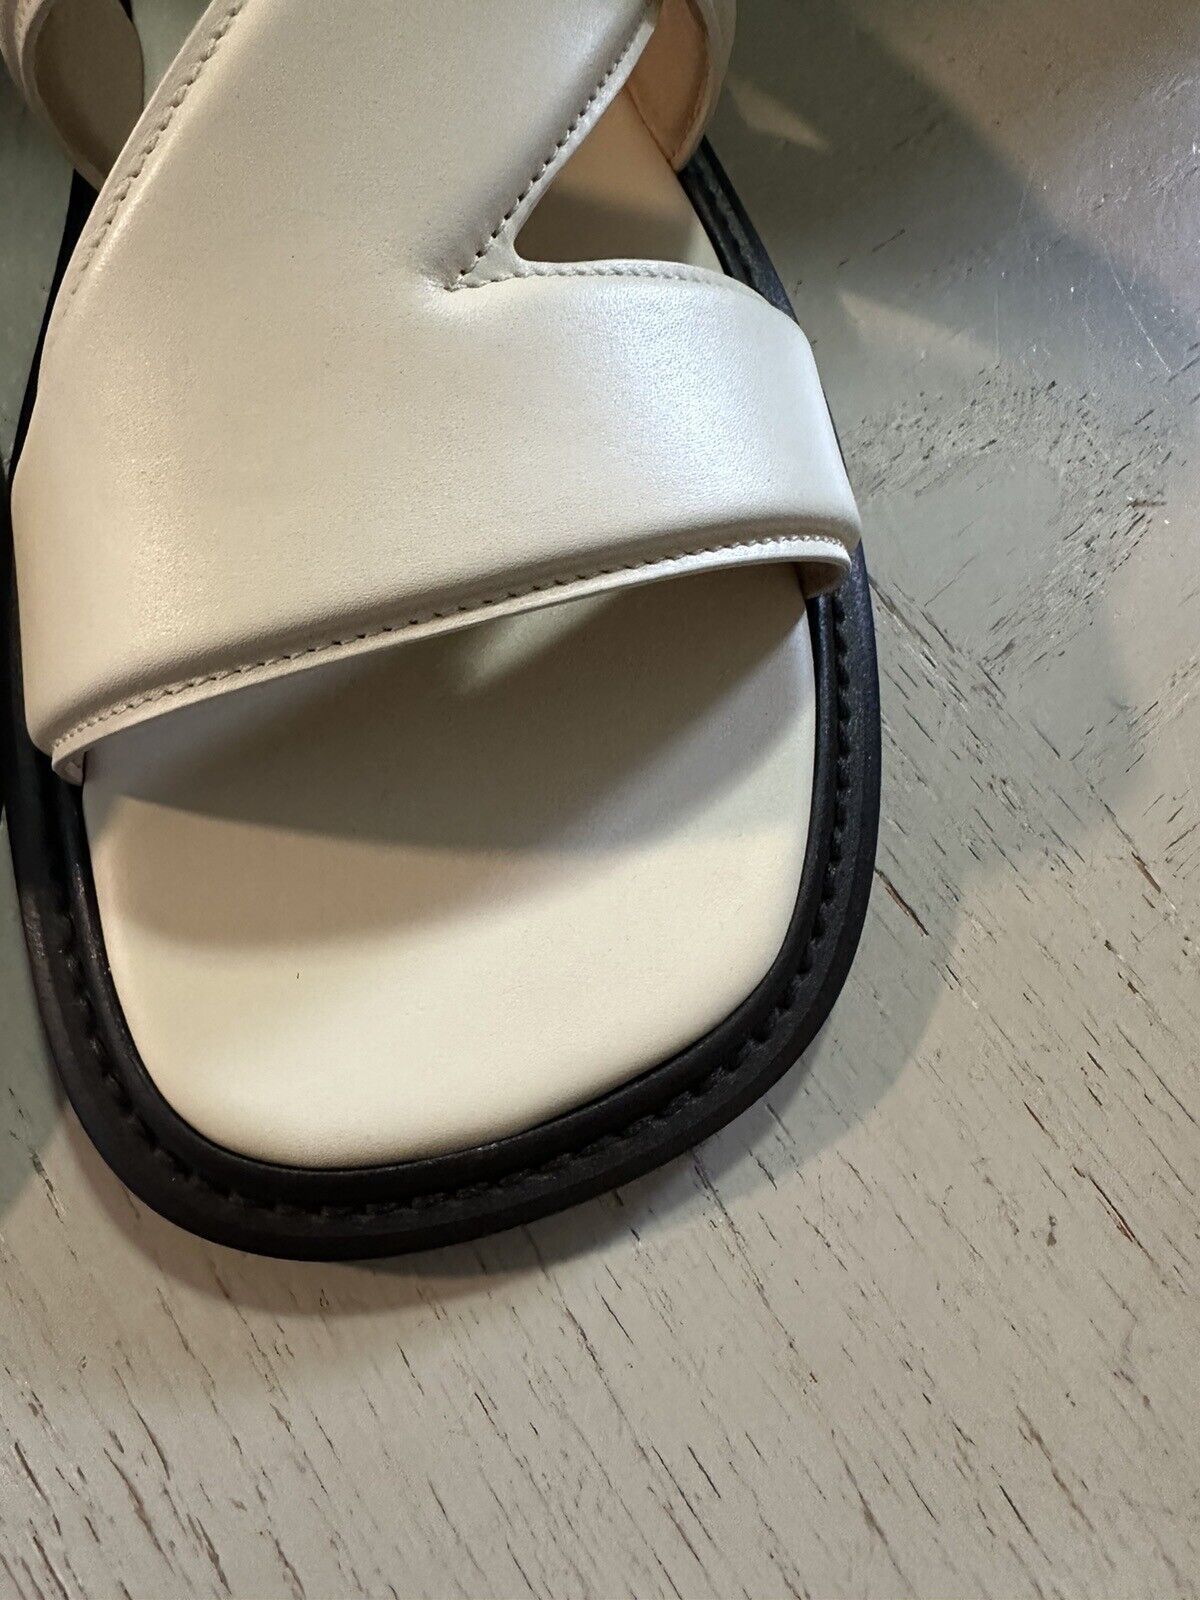 Мужские сандалии из кожи теленка Bottega Venetta цвета слоновой кости 760 долларов США 10 долларов США/43 ЕС